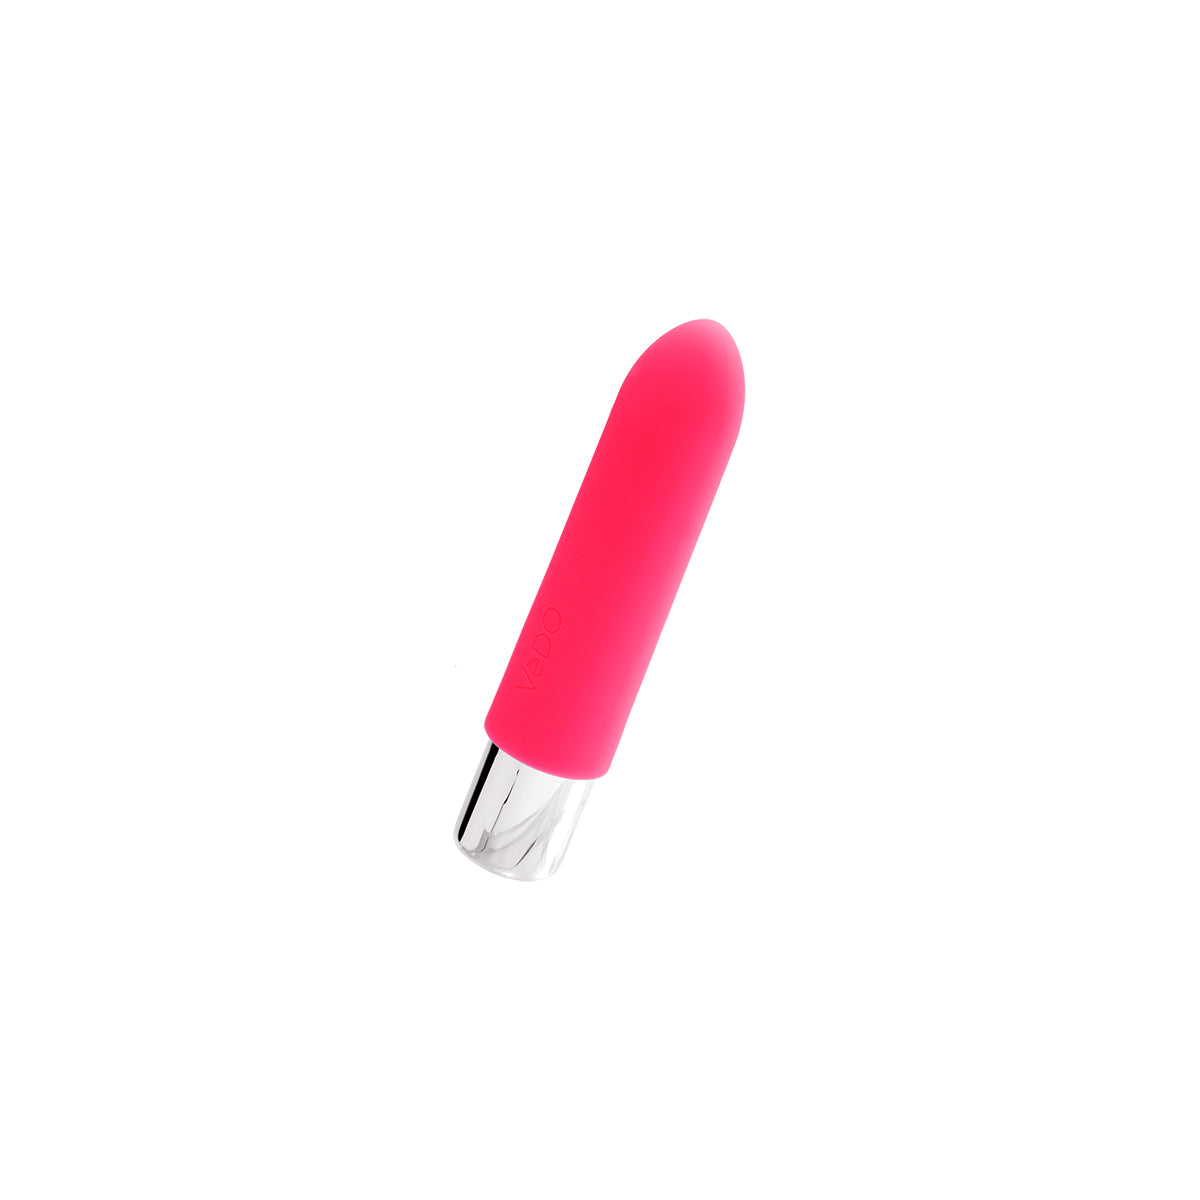 VeDO Bam Mini Bullet - Pink